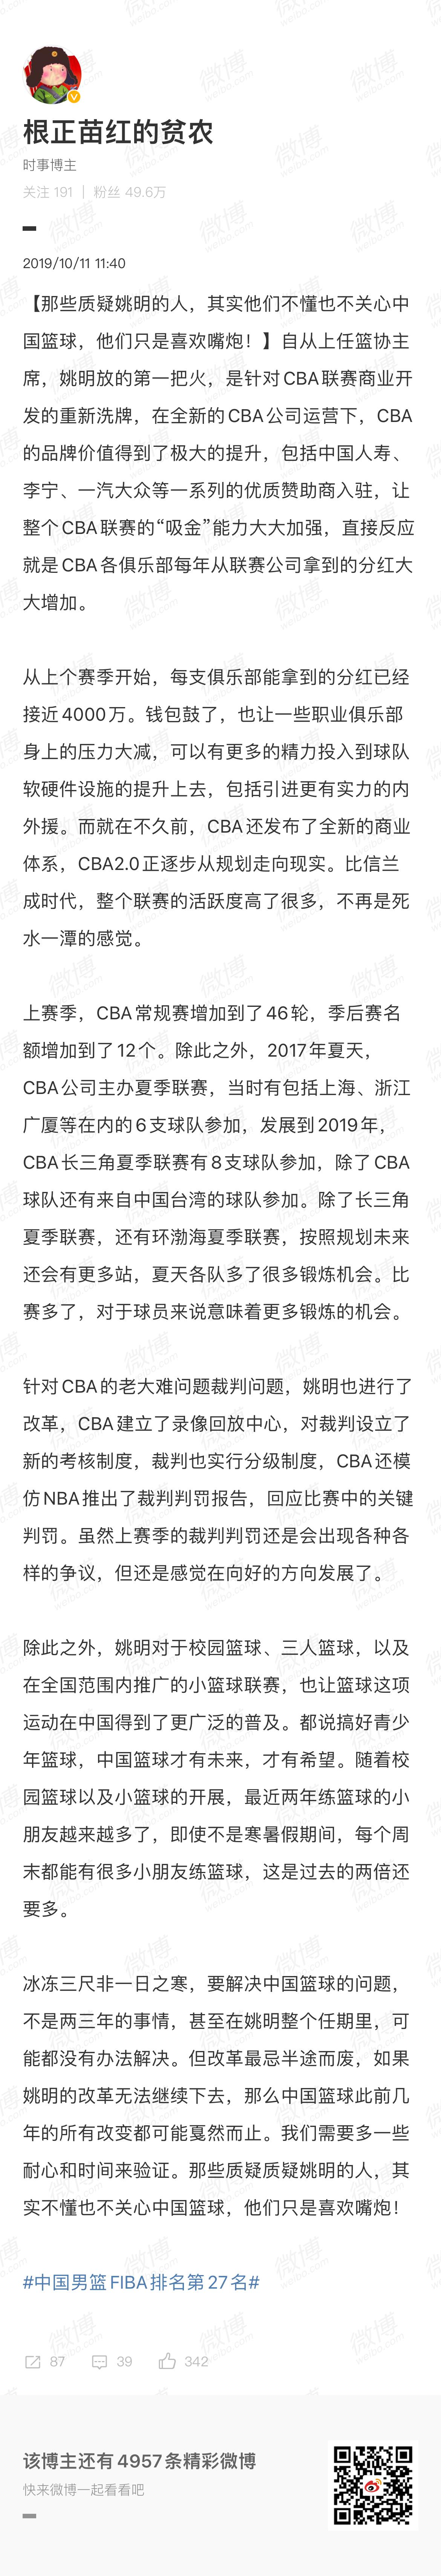 #姚明不再兼任CBA公司董事长# 看到有人黑大姚我觉得寒心。就凭姚明把自己的中国(2)